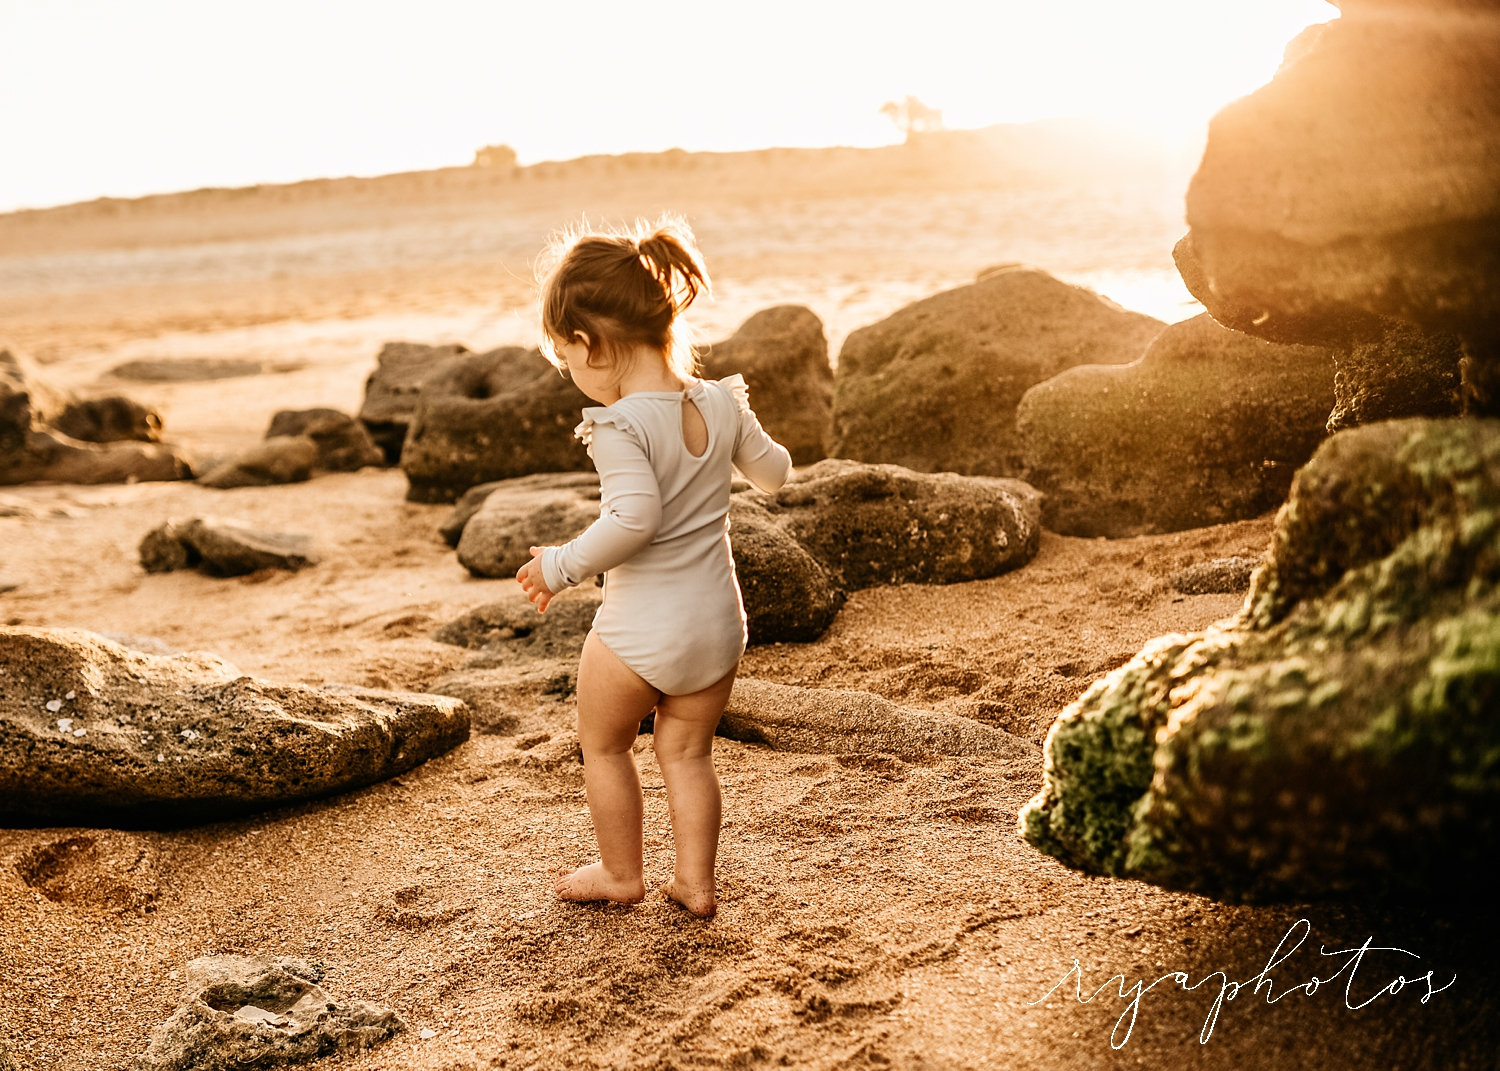 toddler girl among the sand and rocks of a Florida beach, Ryaphotos